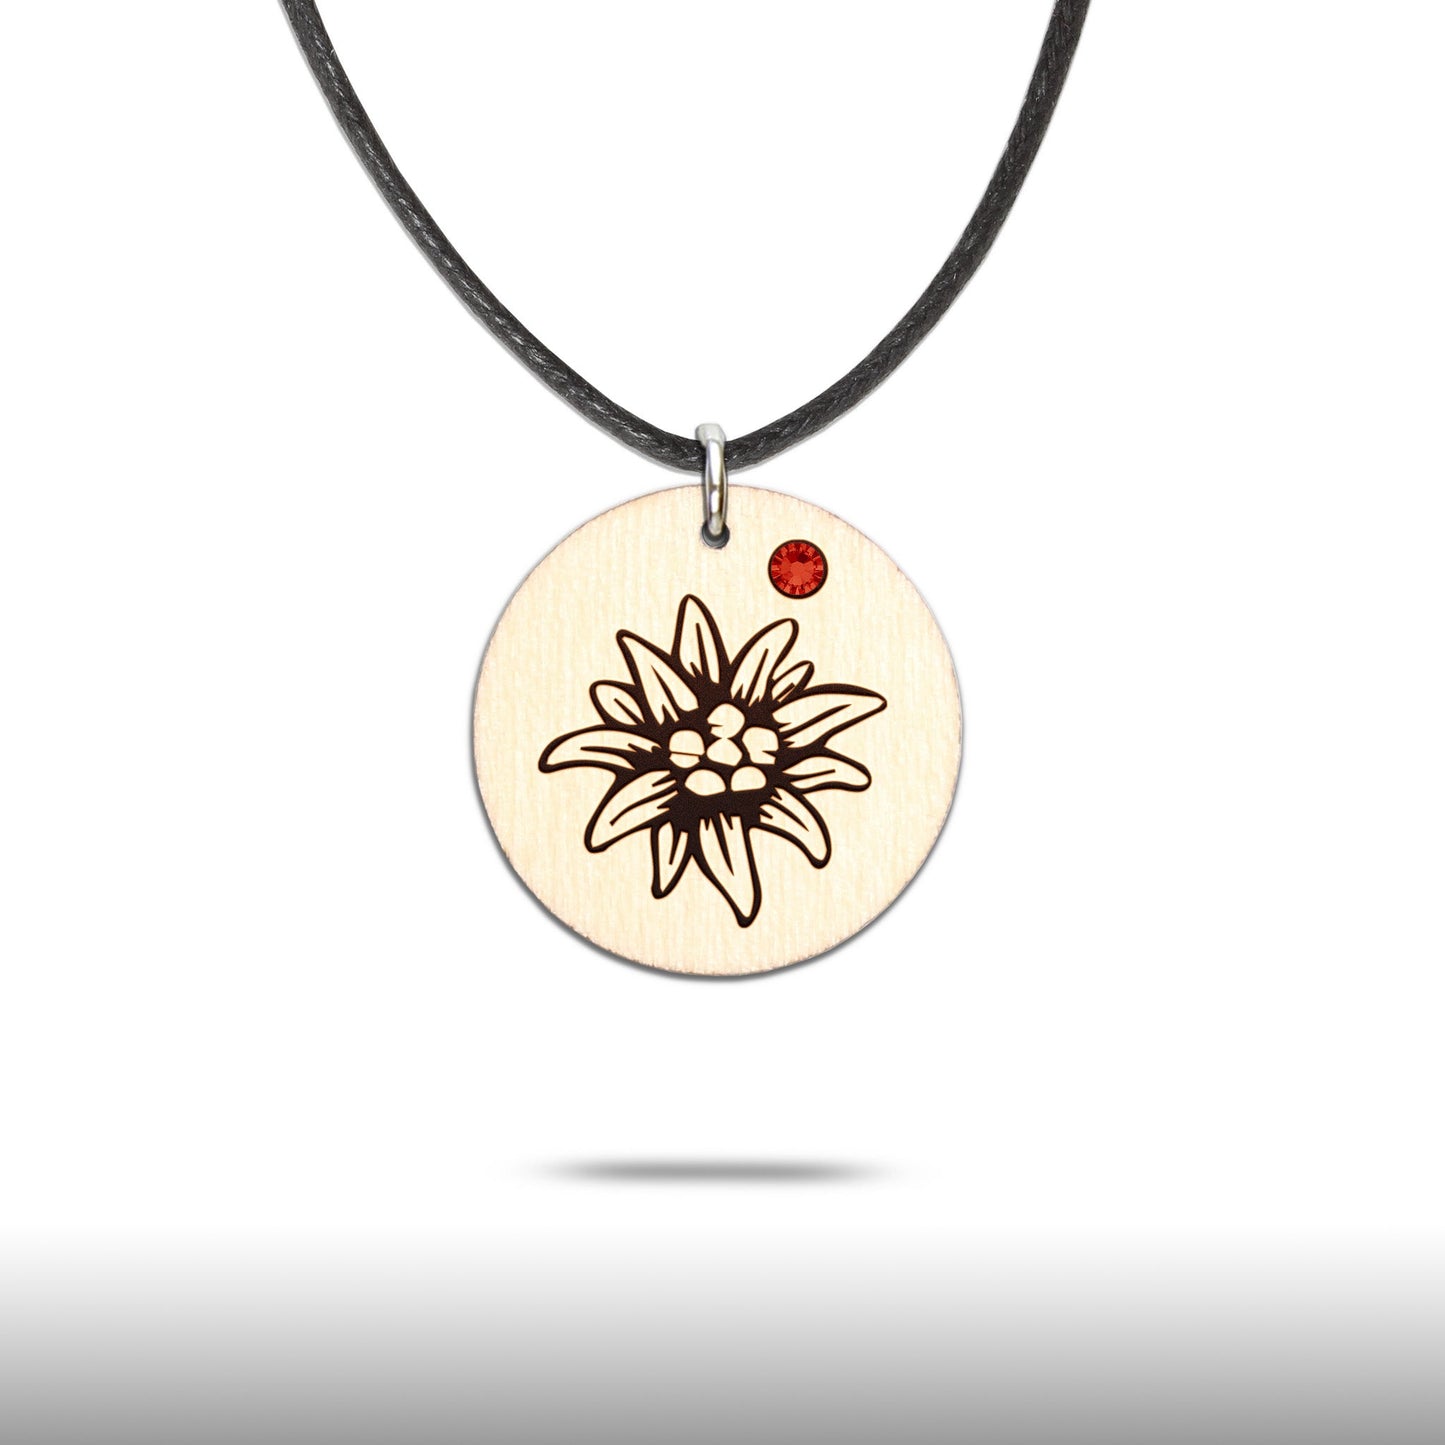 Halskette "Edelweiss" mit Glitzerstein - Nanino Design Onlineshop -